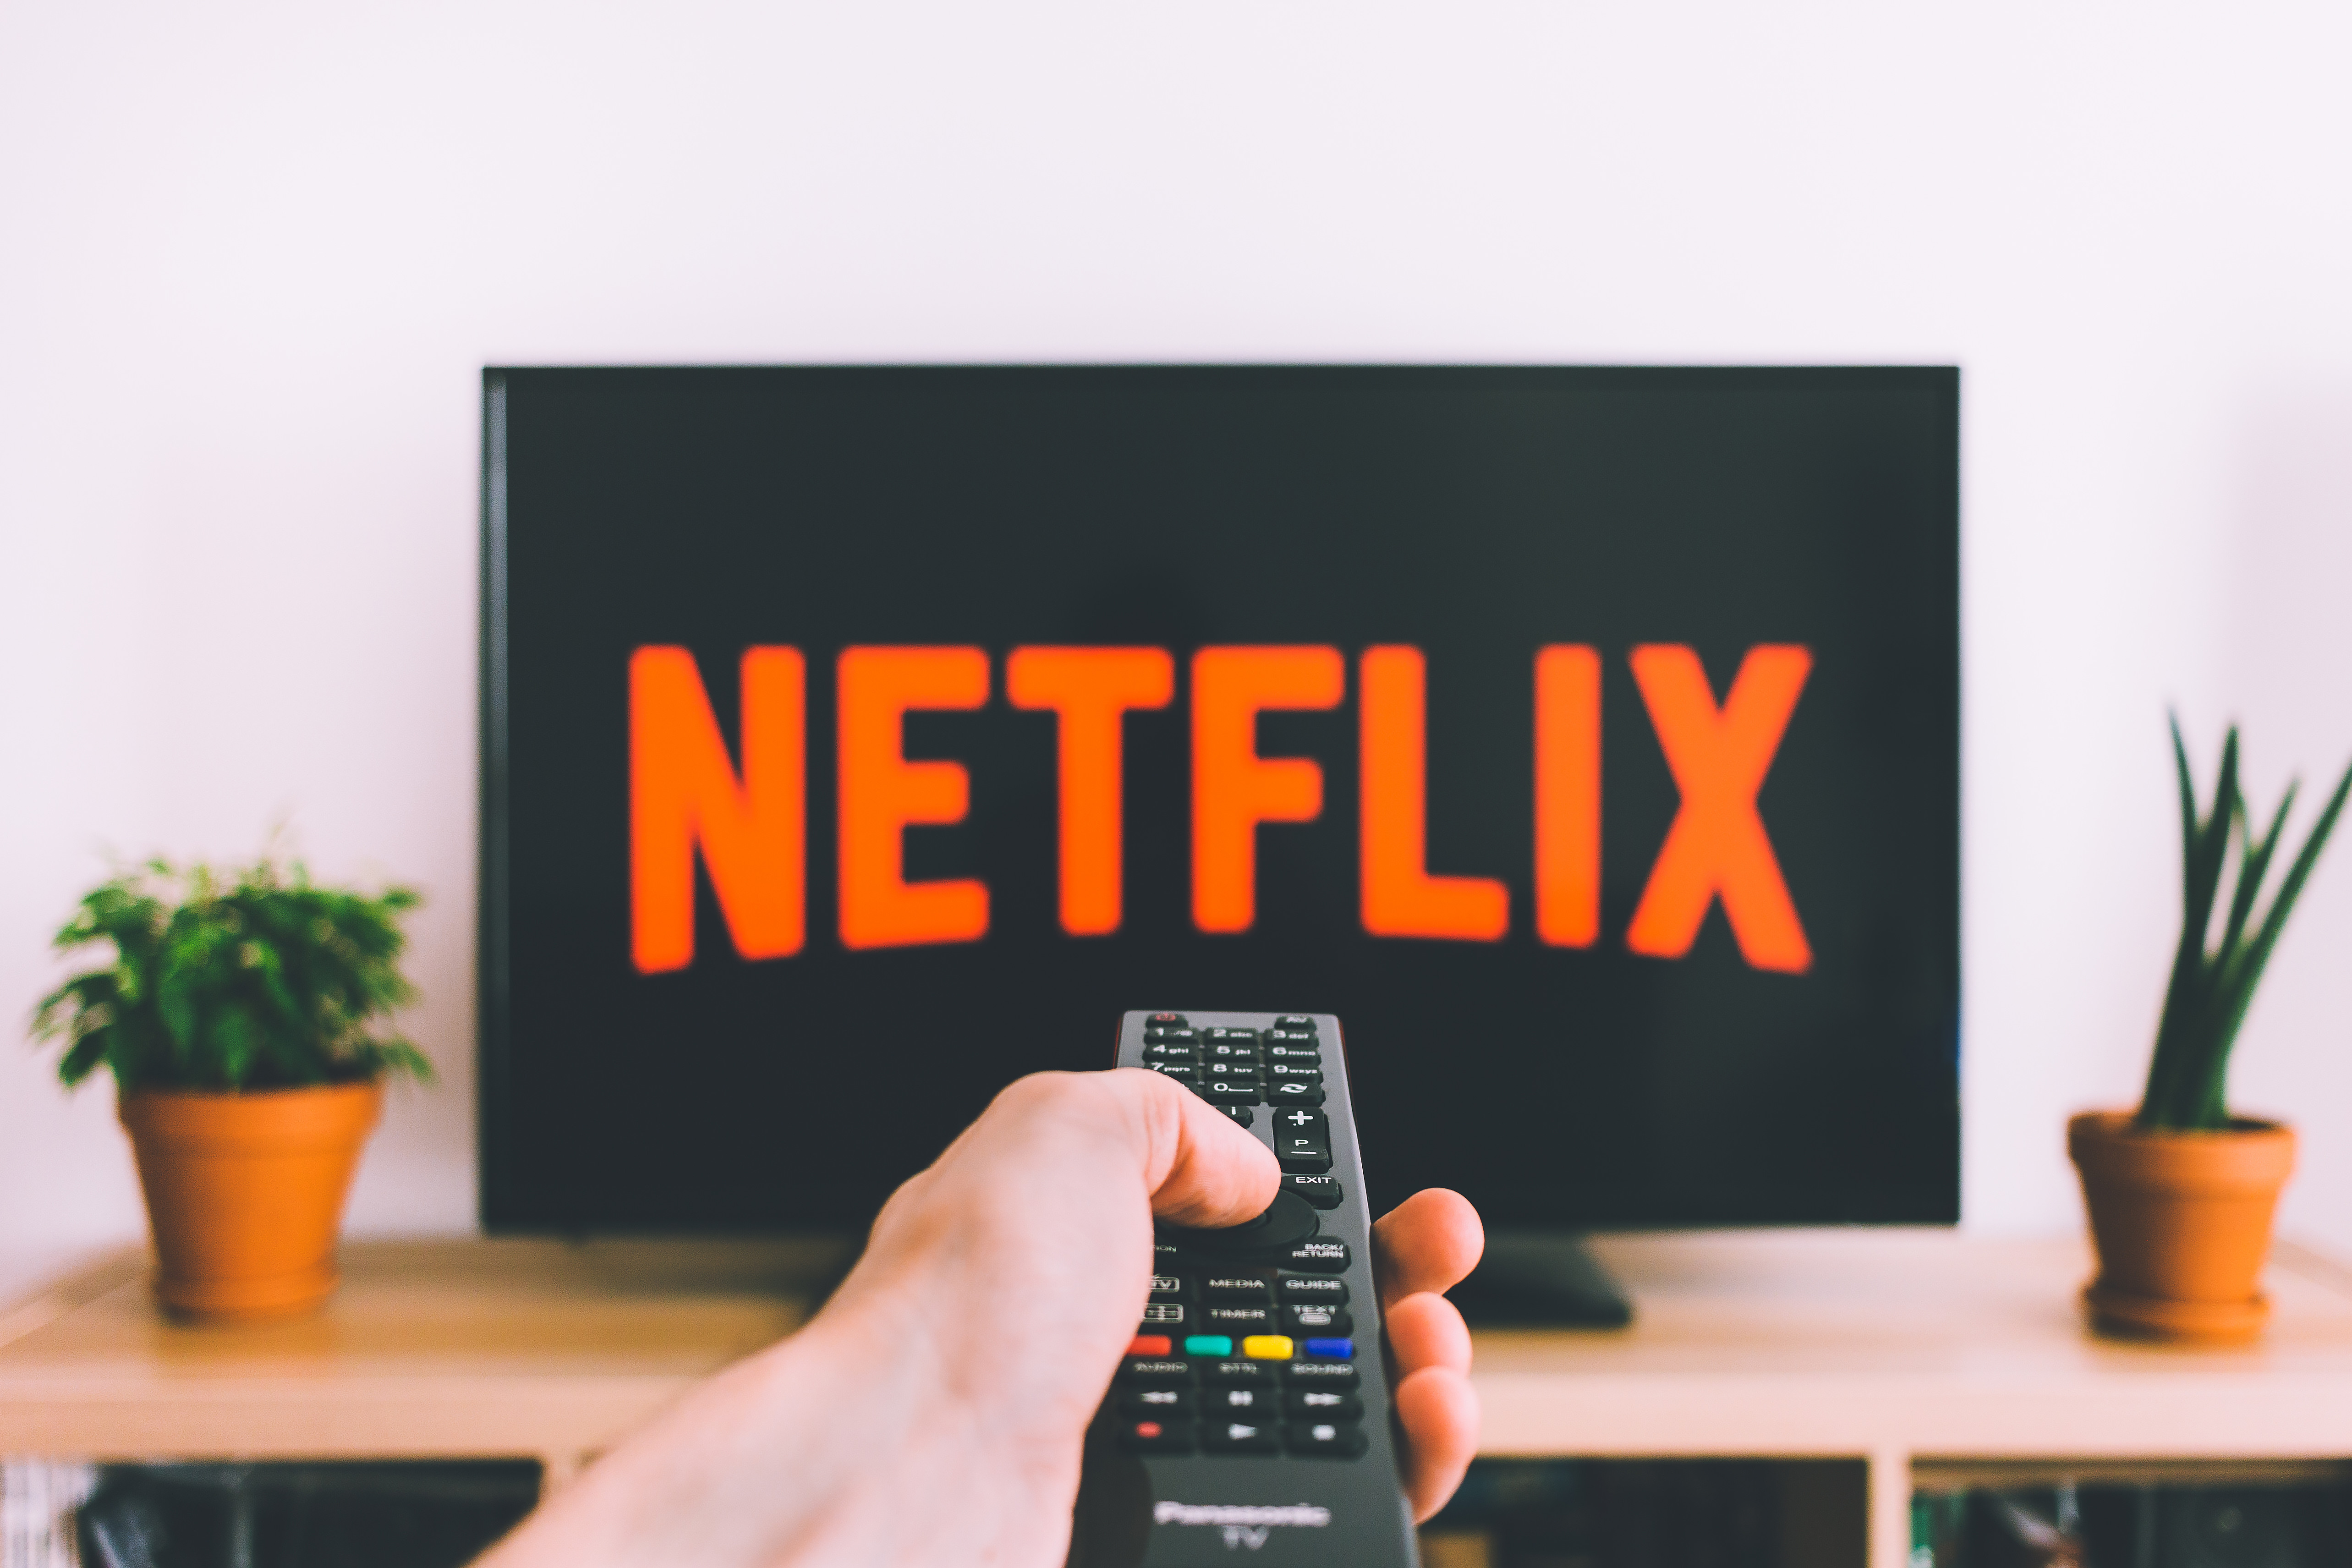 “Netflix”lə əməkdaşlığımız başlayıb” – Mədəniyyət naziri